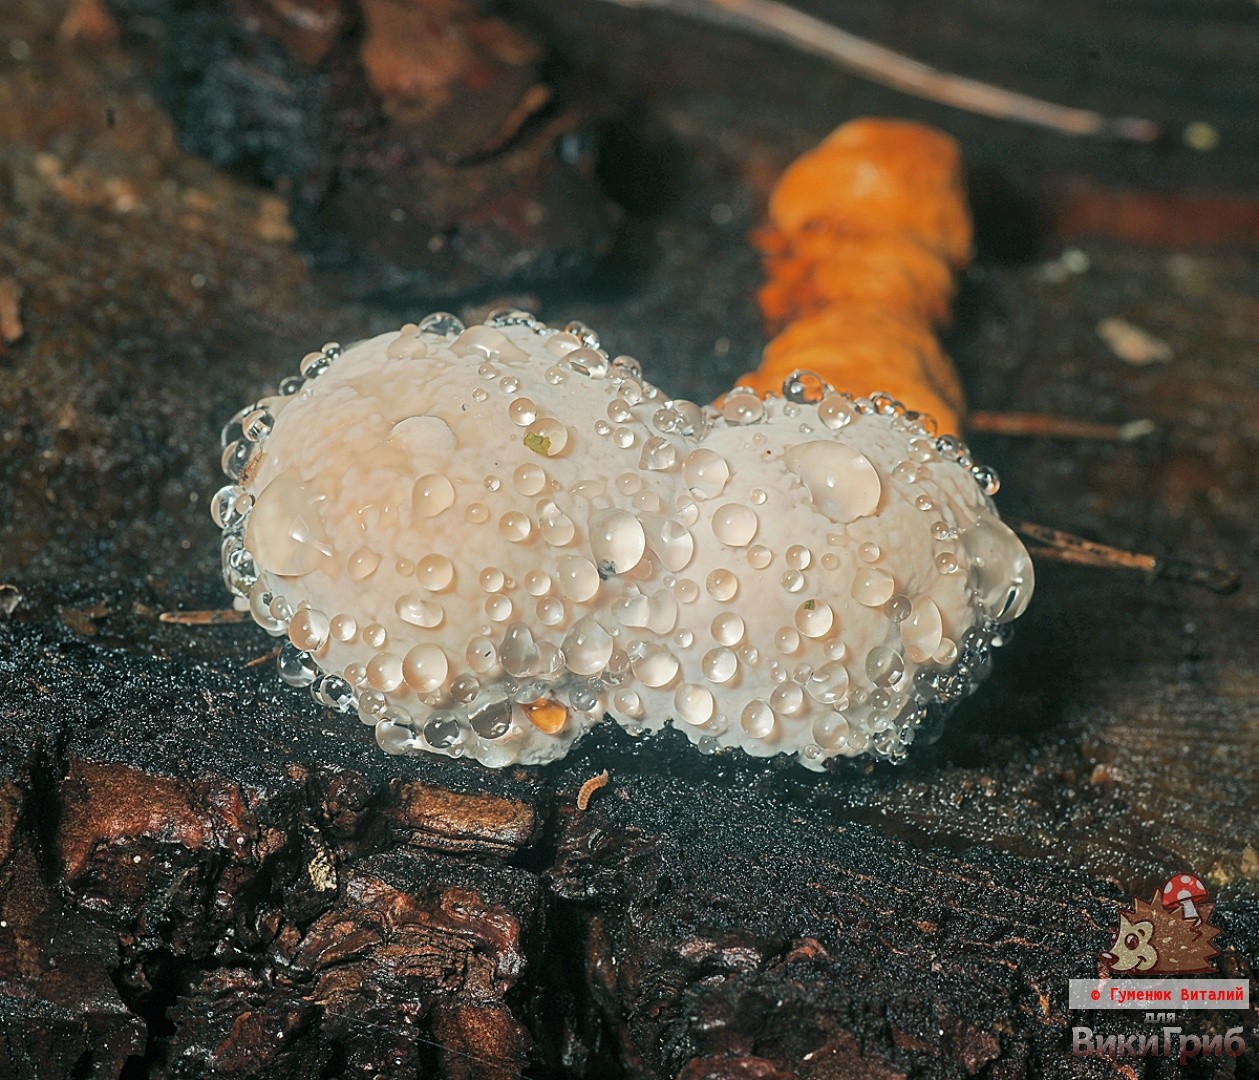 Bordered polypore (Fomitopsis pinicola) photo and description